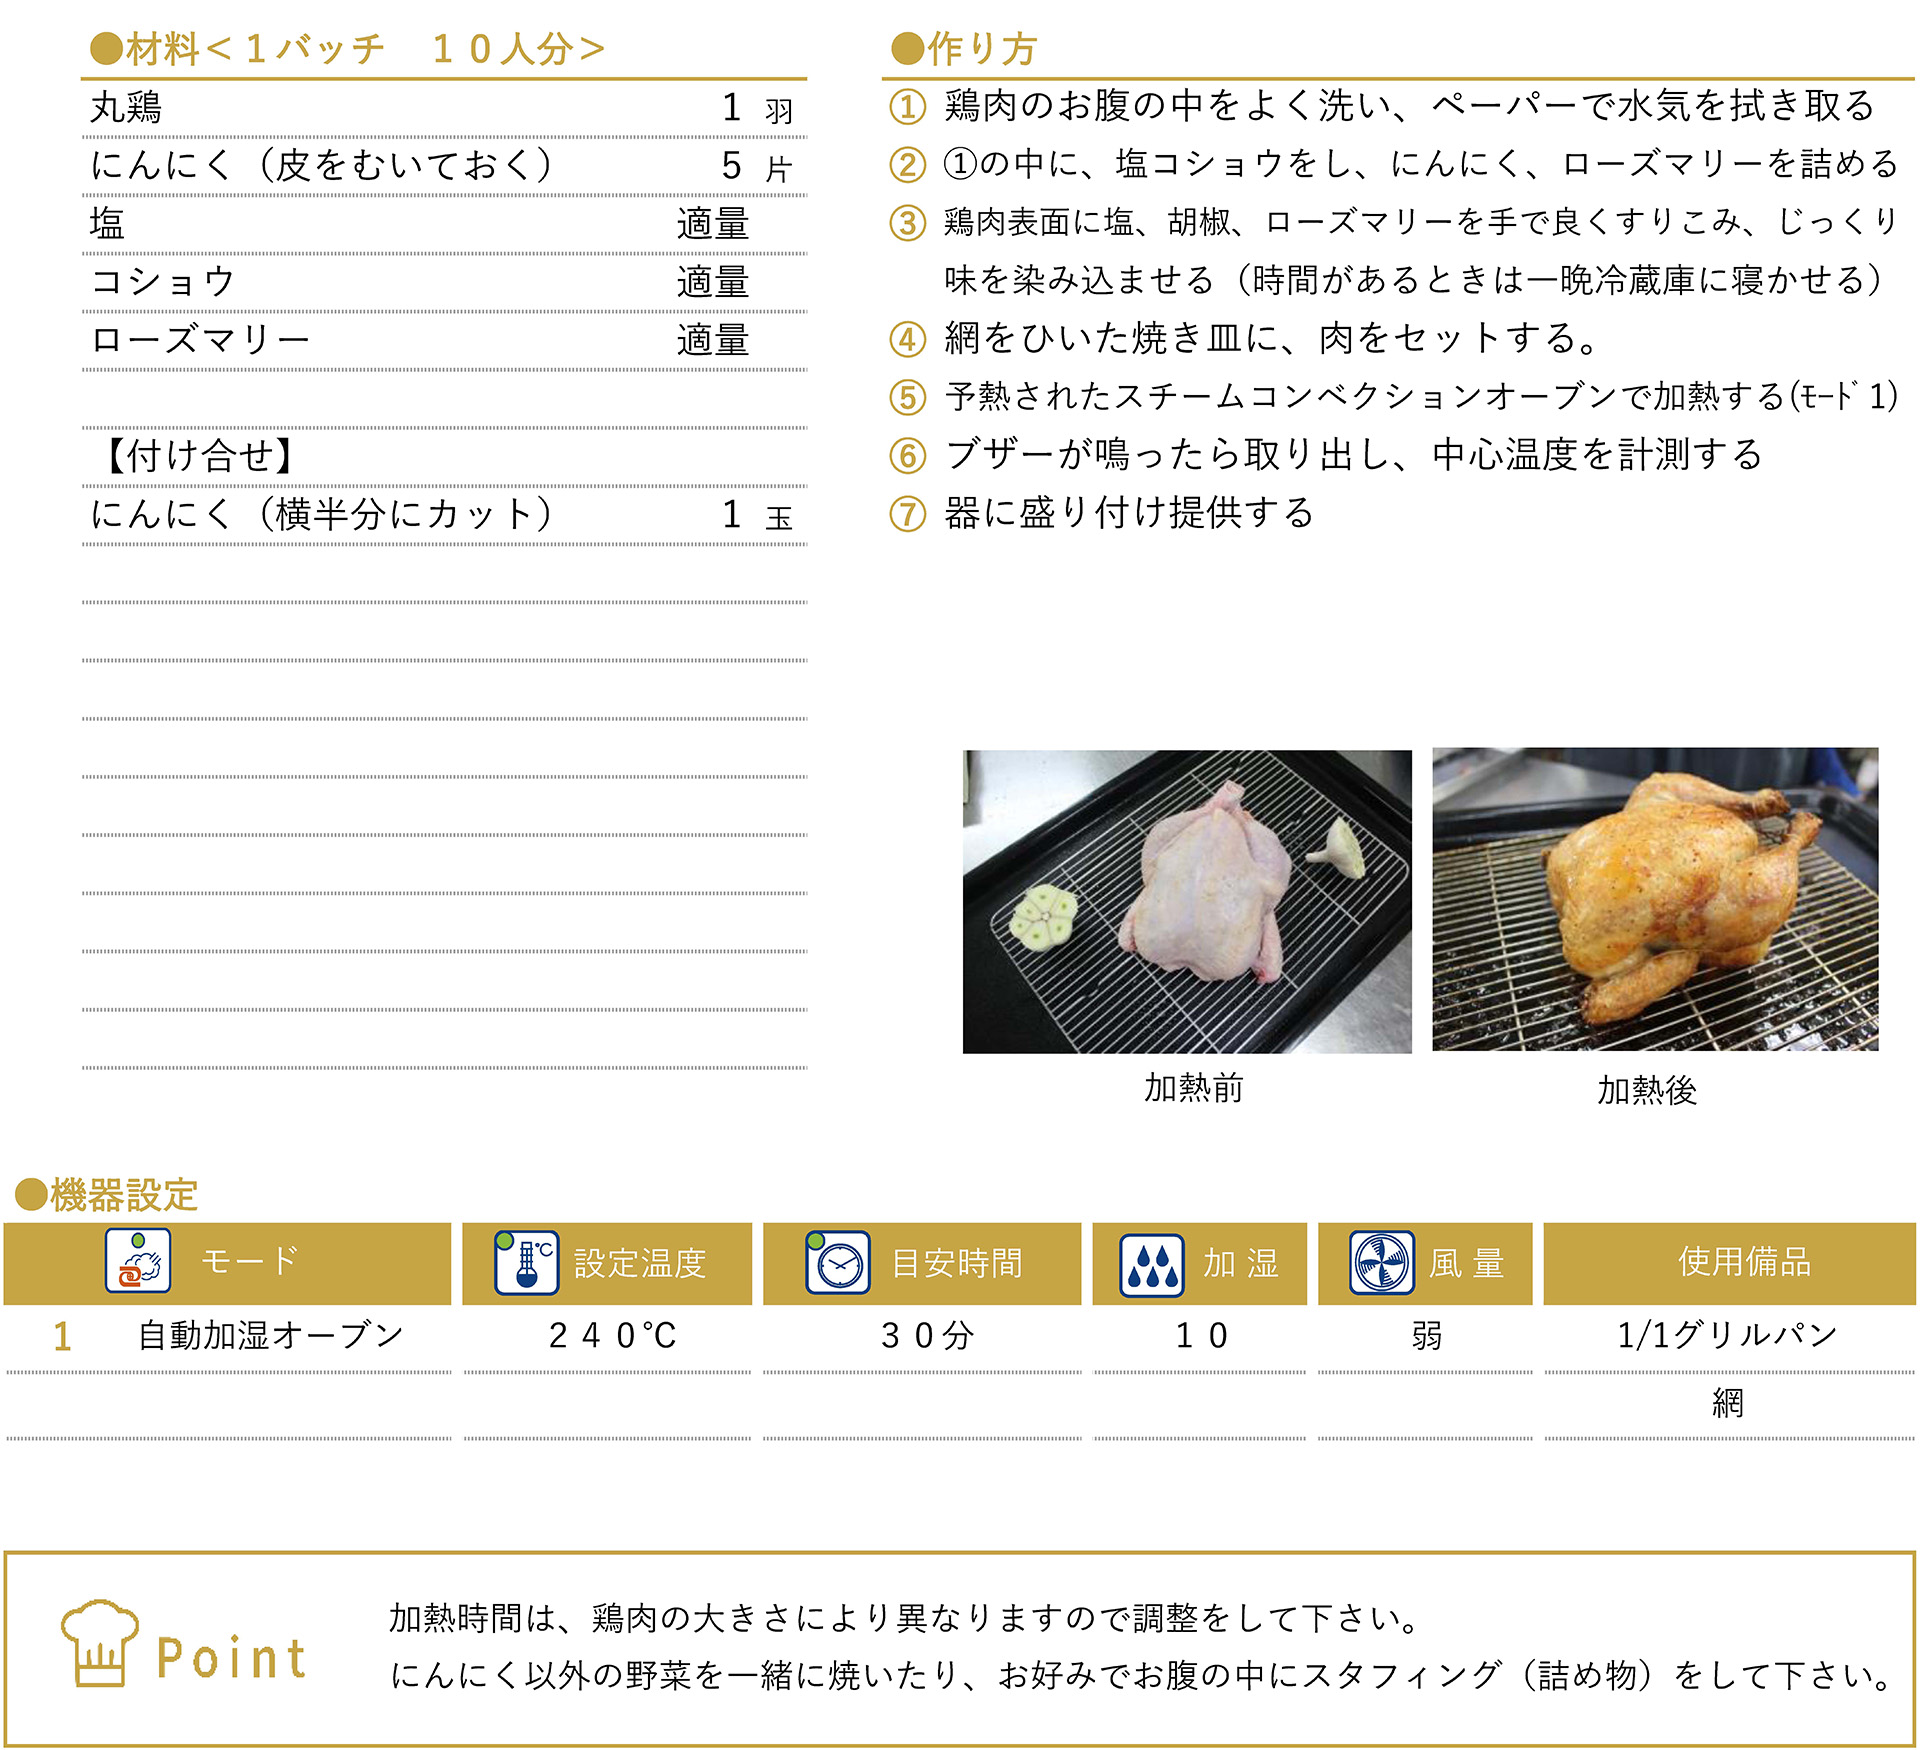 ローストチキン（丸鶏）のレシピ